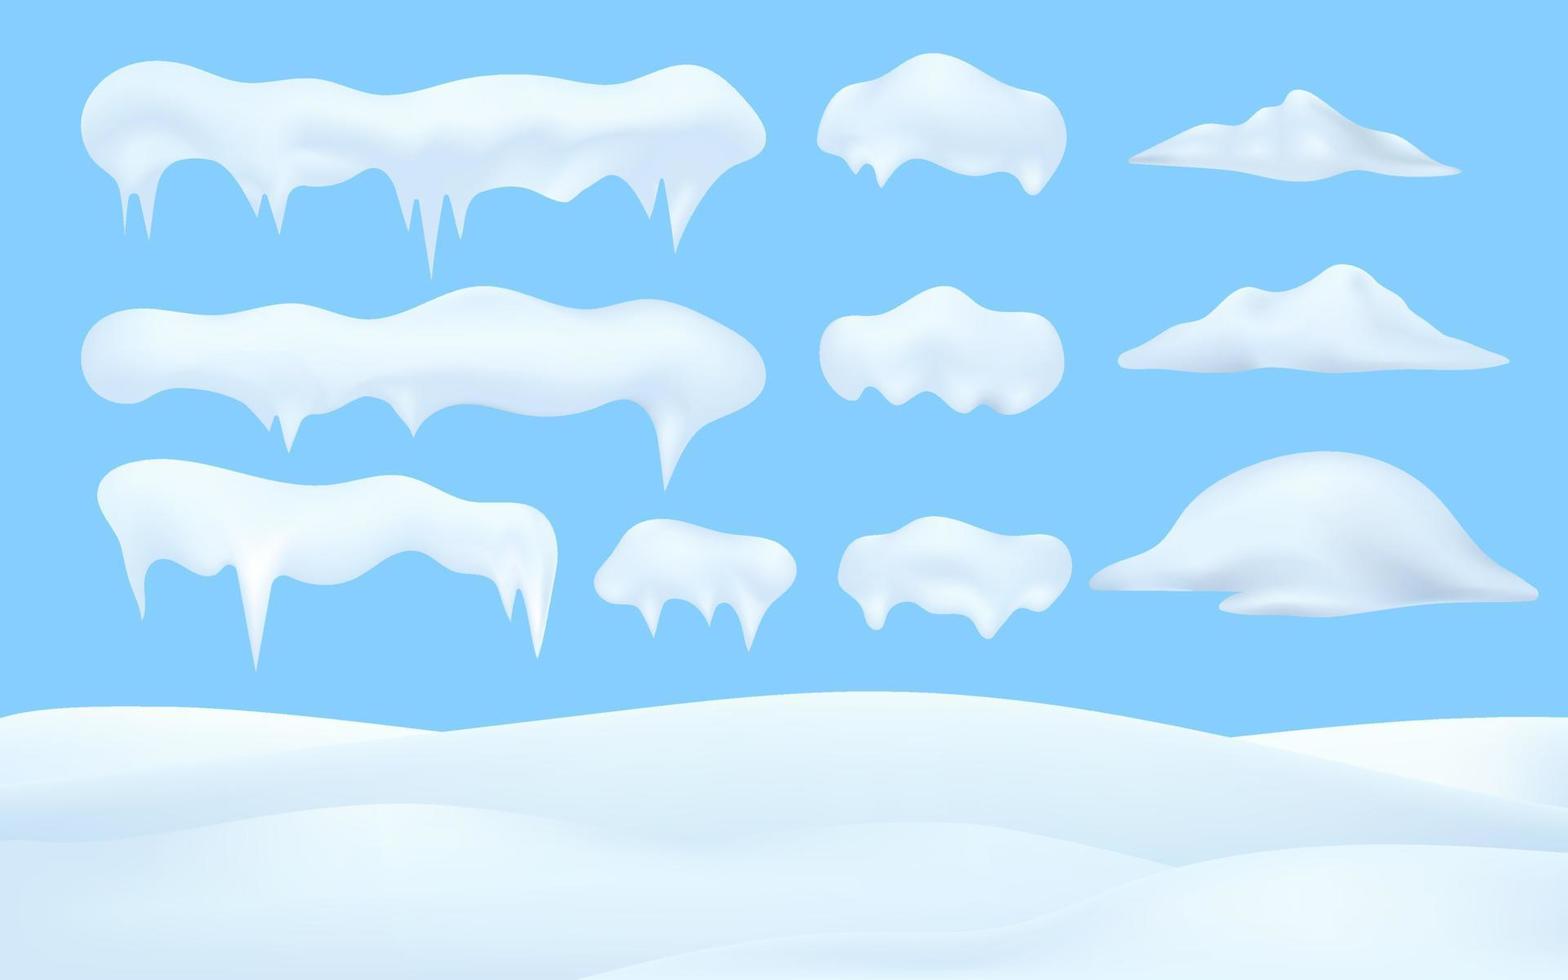 Nieve de invierno 3d, navidad, textura de nieve, elementos blancos, decoraciones navideñas de nieve. colección de vectores de gorras de nieve, montón, carámbanos sobre fondo de cielo azul, hielo, bola de nieve y ventisquero.